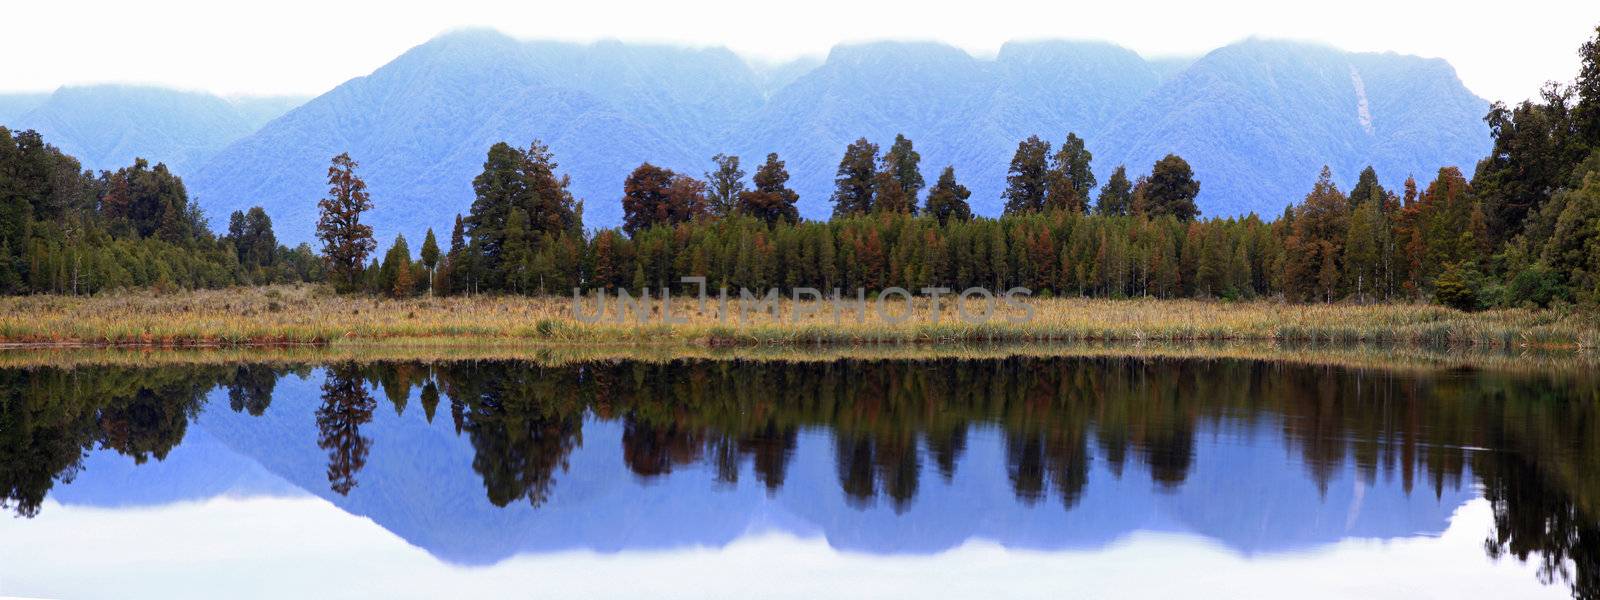 panorama Lake Matheson New Zealand by vichie81